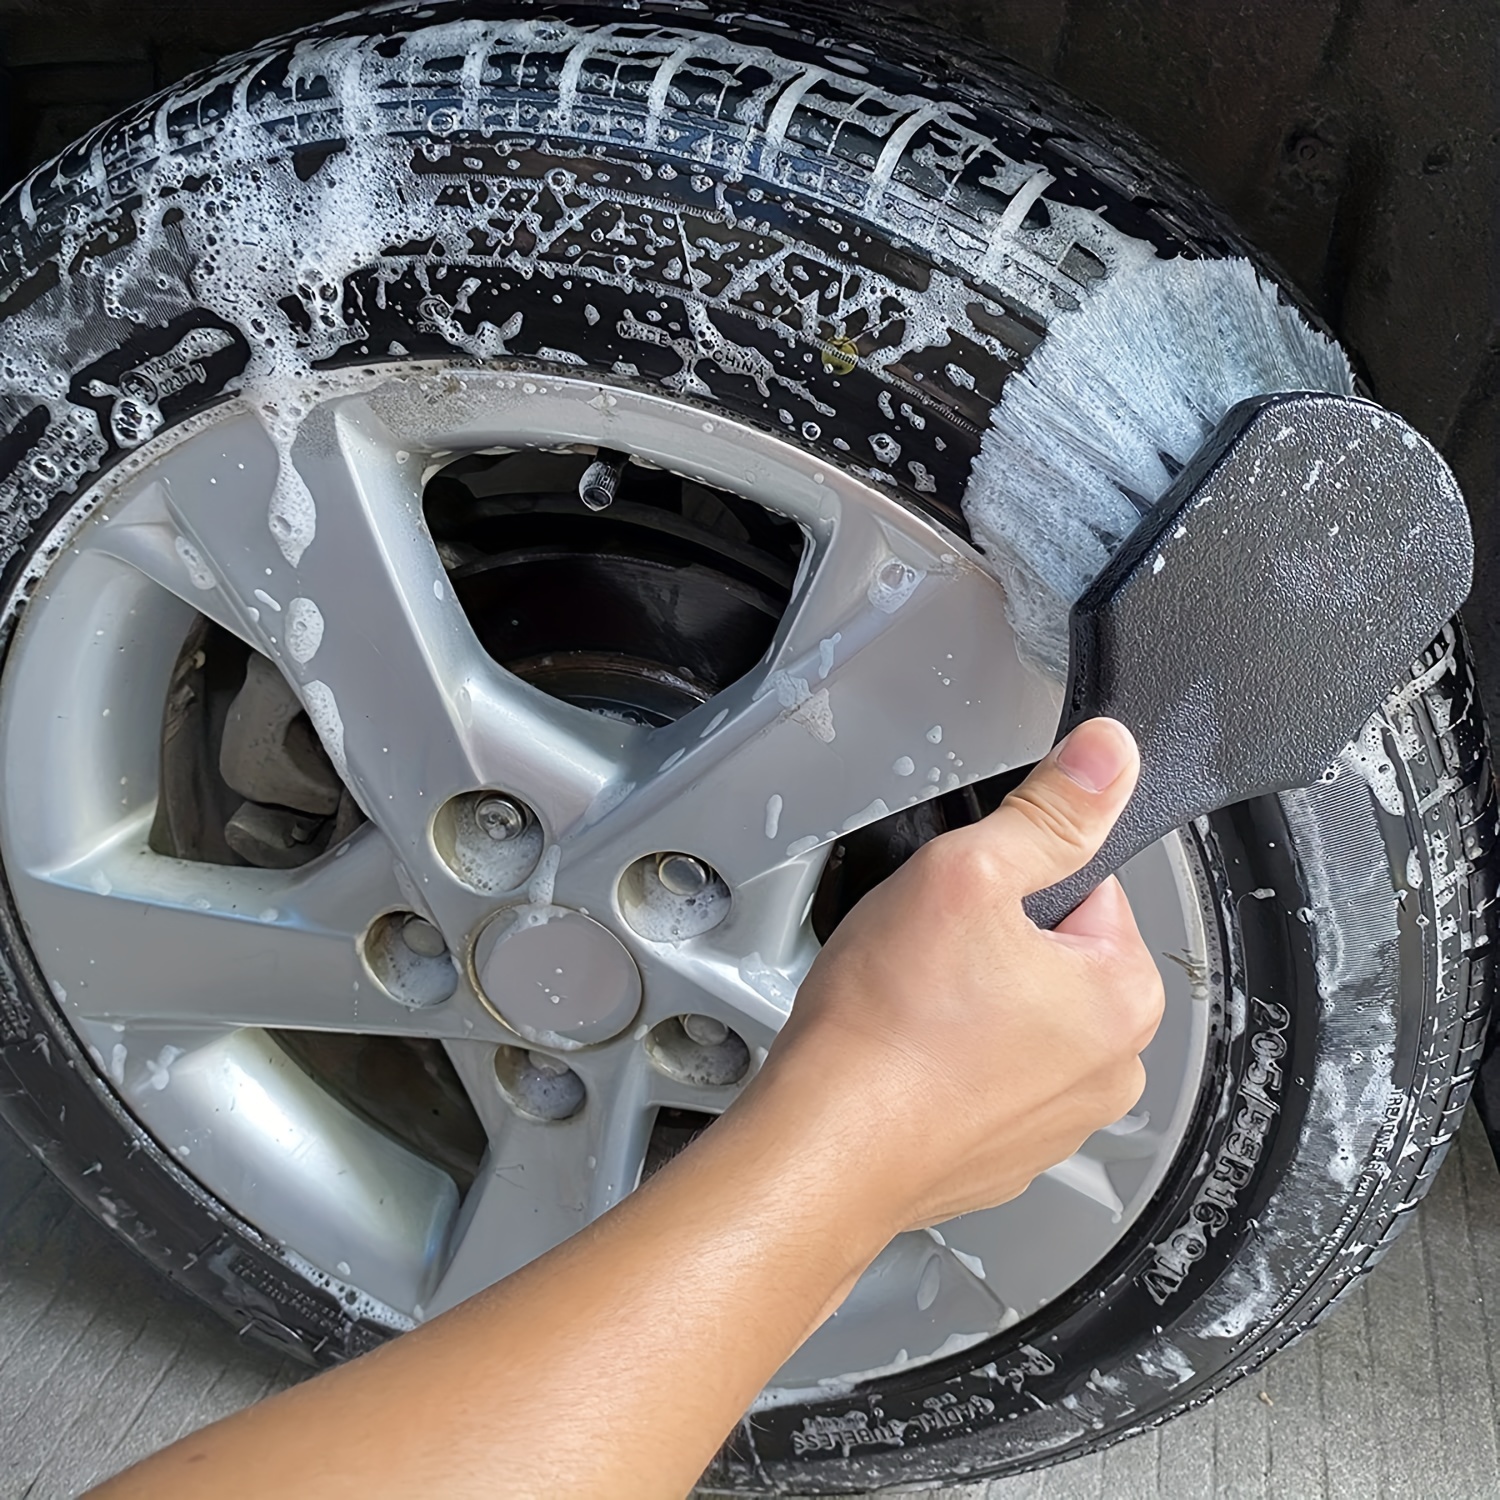  DANDELG cepillo para rueda de coche, cepillo para llantas,  herramienta de lavado, cepillo de limpieza de neumáticos de vehículos,  accesorios de coche : Automotriz